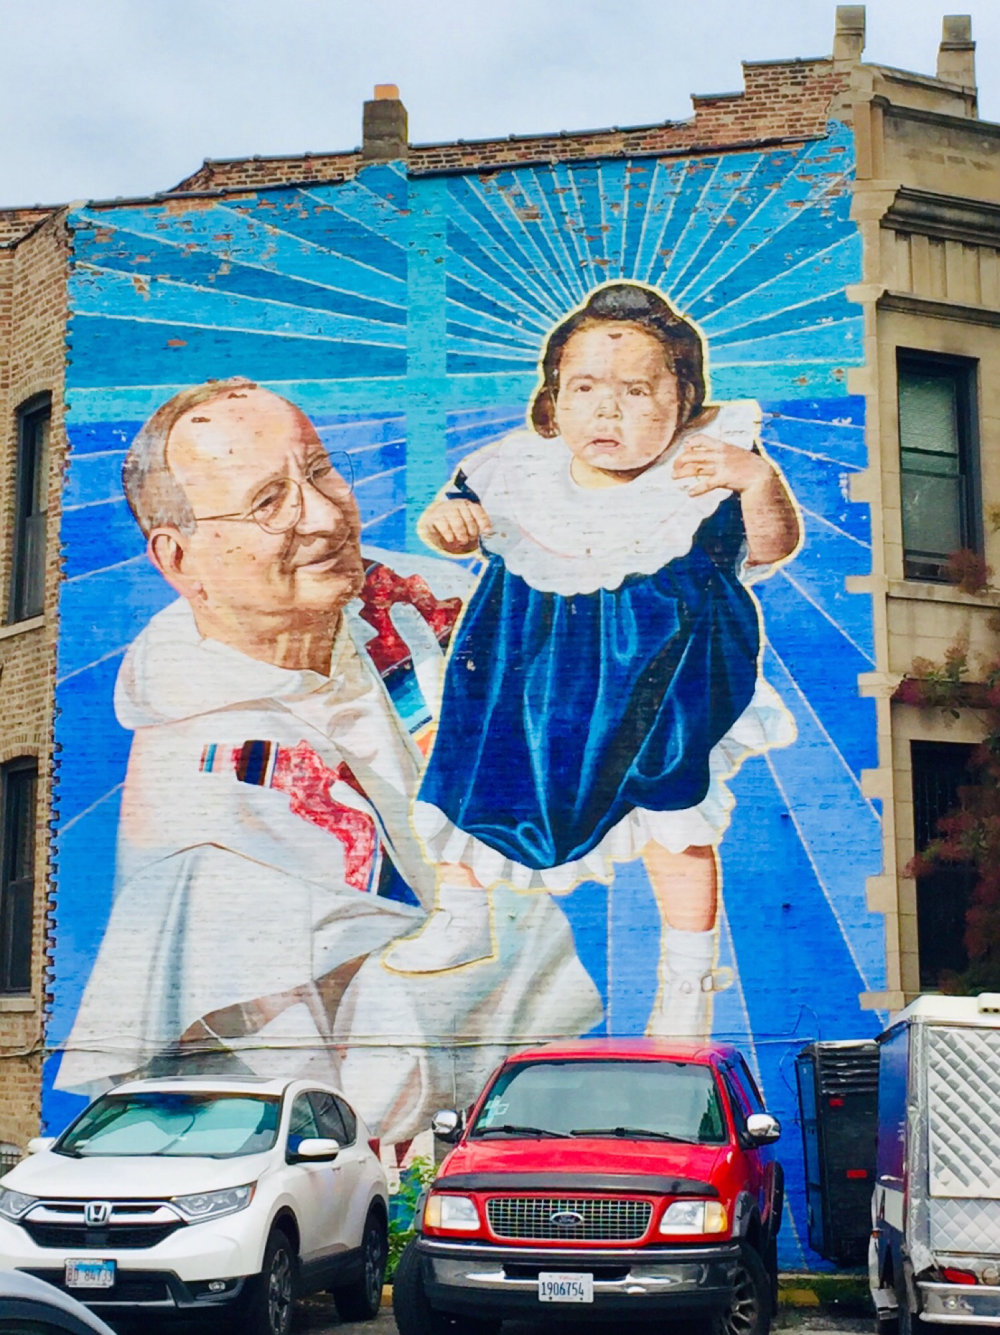 mural in Chicago by artist Jeff Zimmermann.